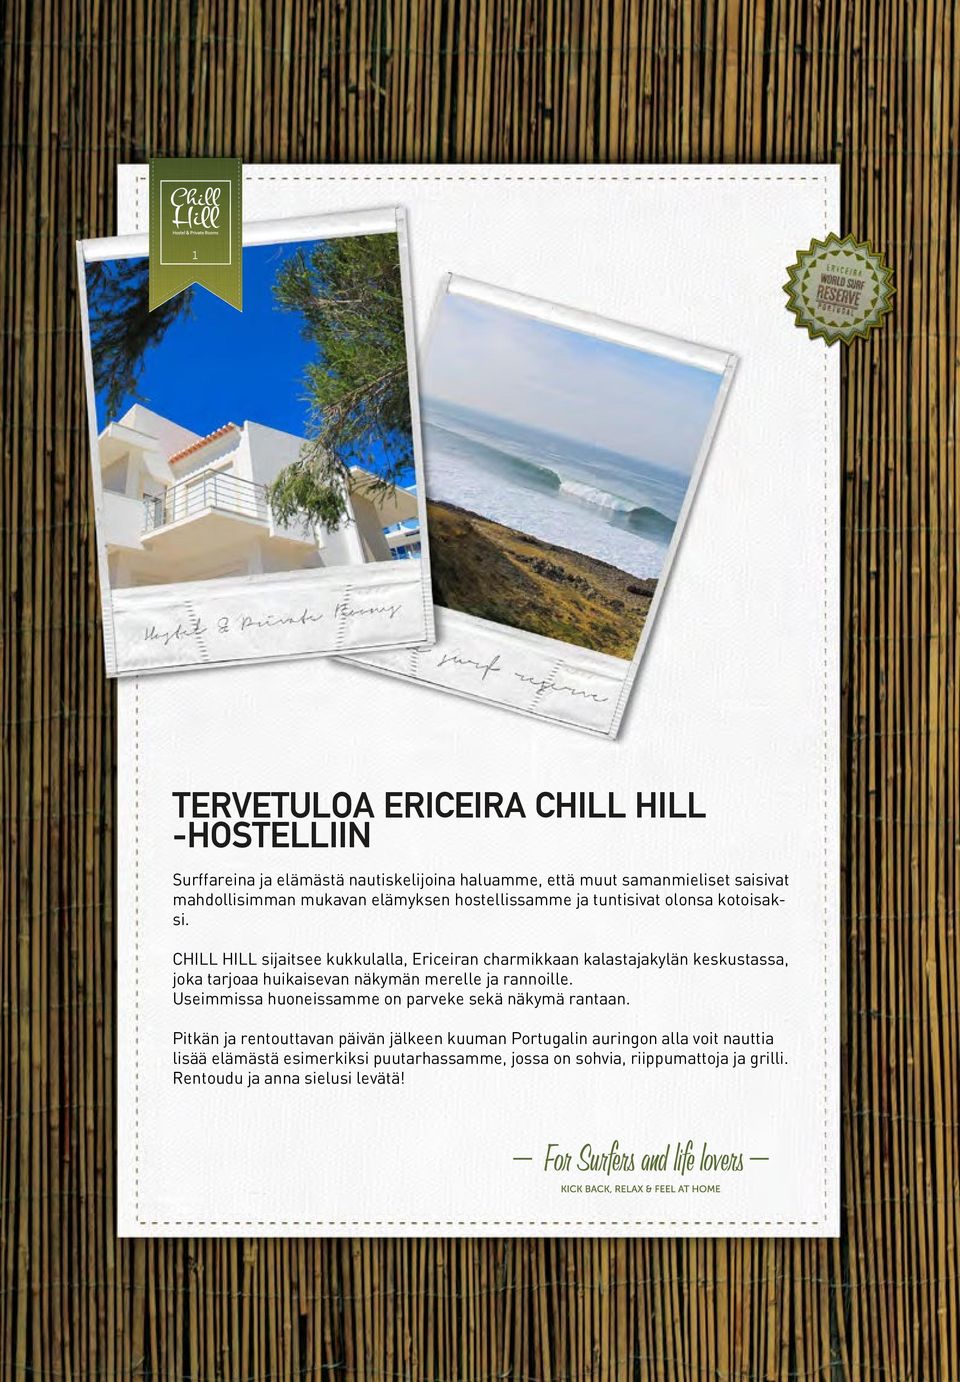 CHILL HILL sijaitsee kukkulalla, Ericeiran charmikkaan kalastajakylän keskustassa, joka tarjoaa huikaisevan näkymän merelle ja rannoille.